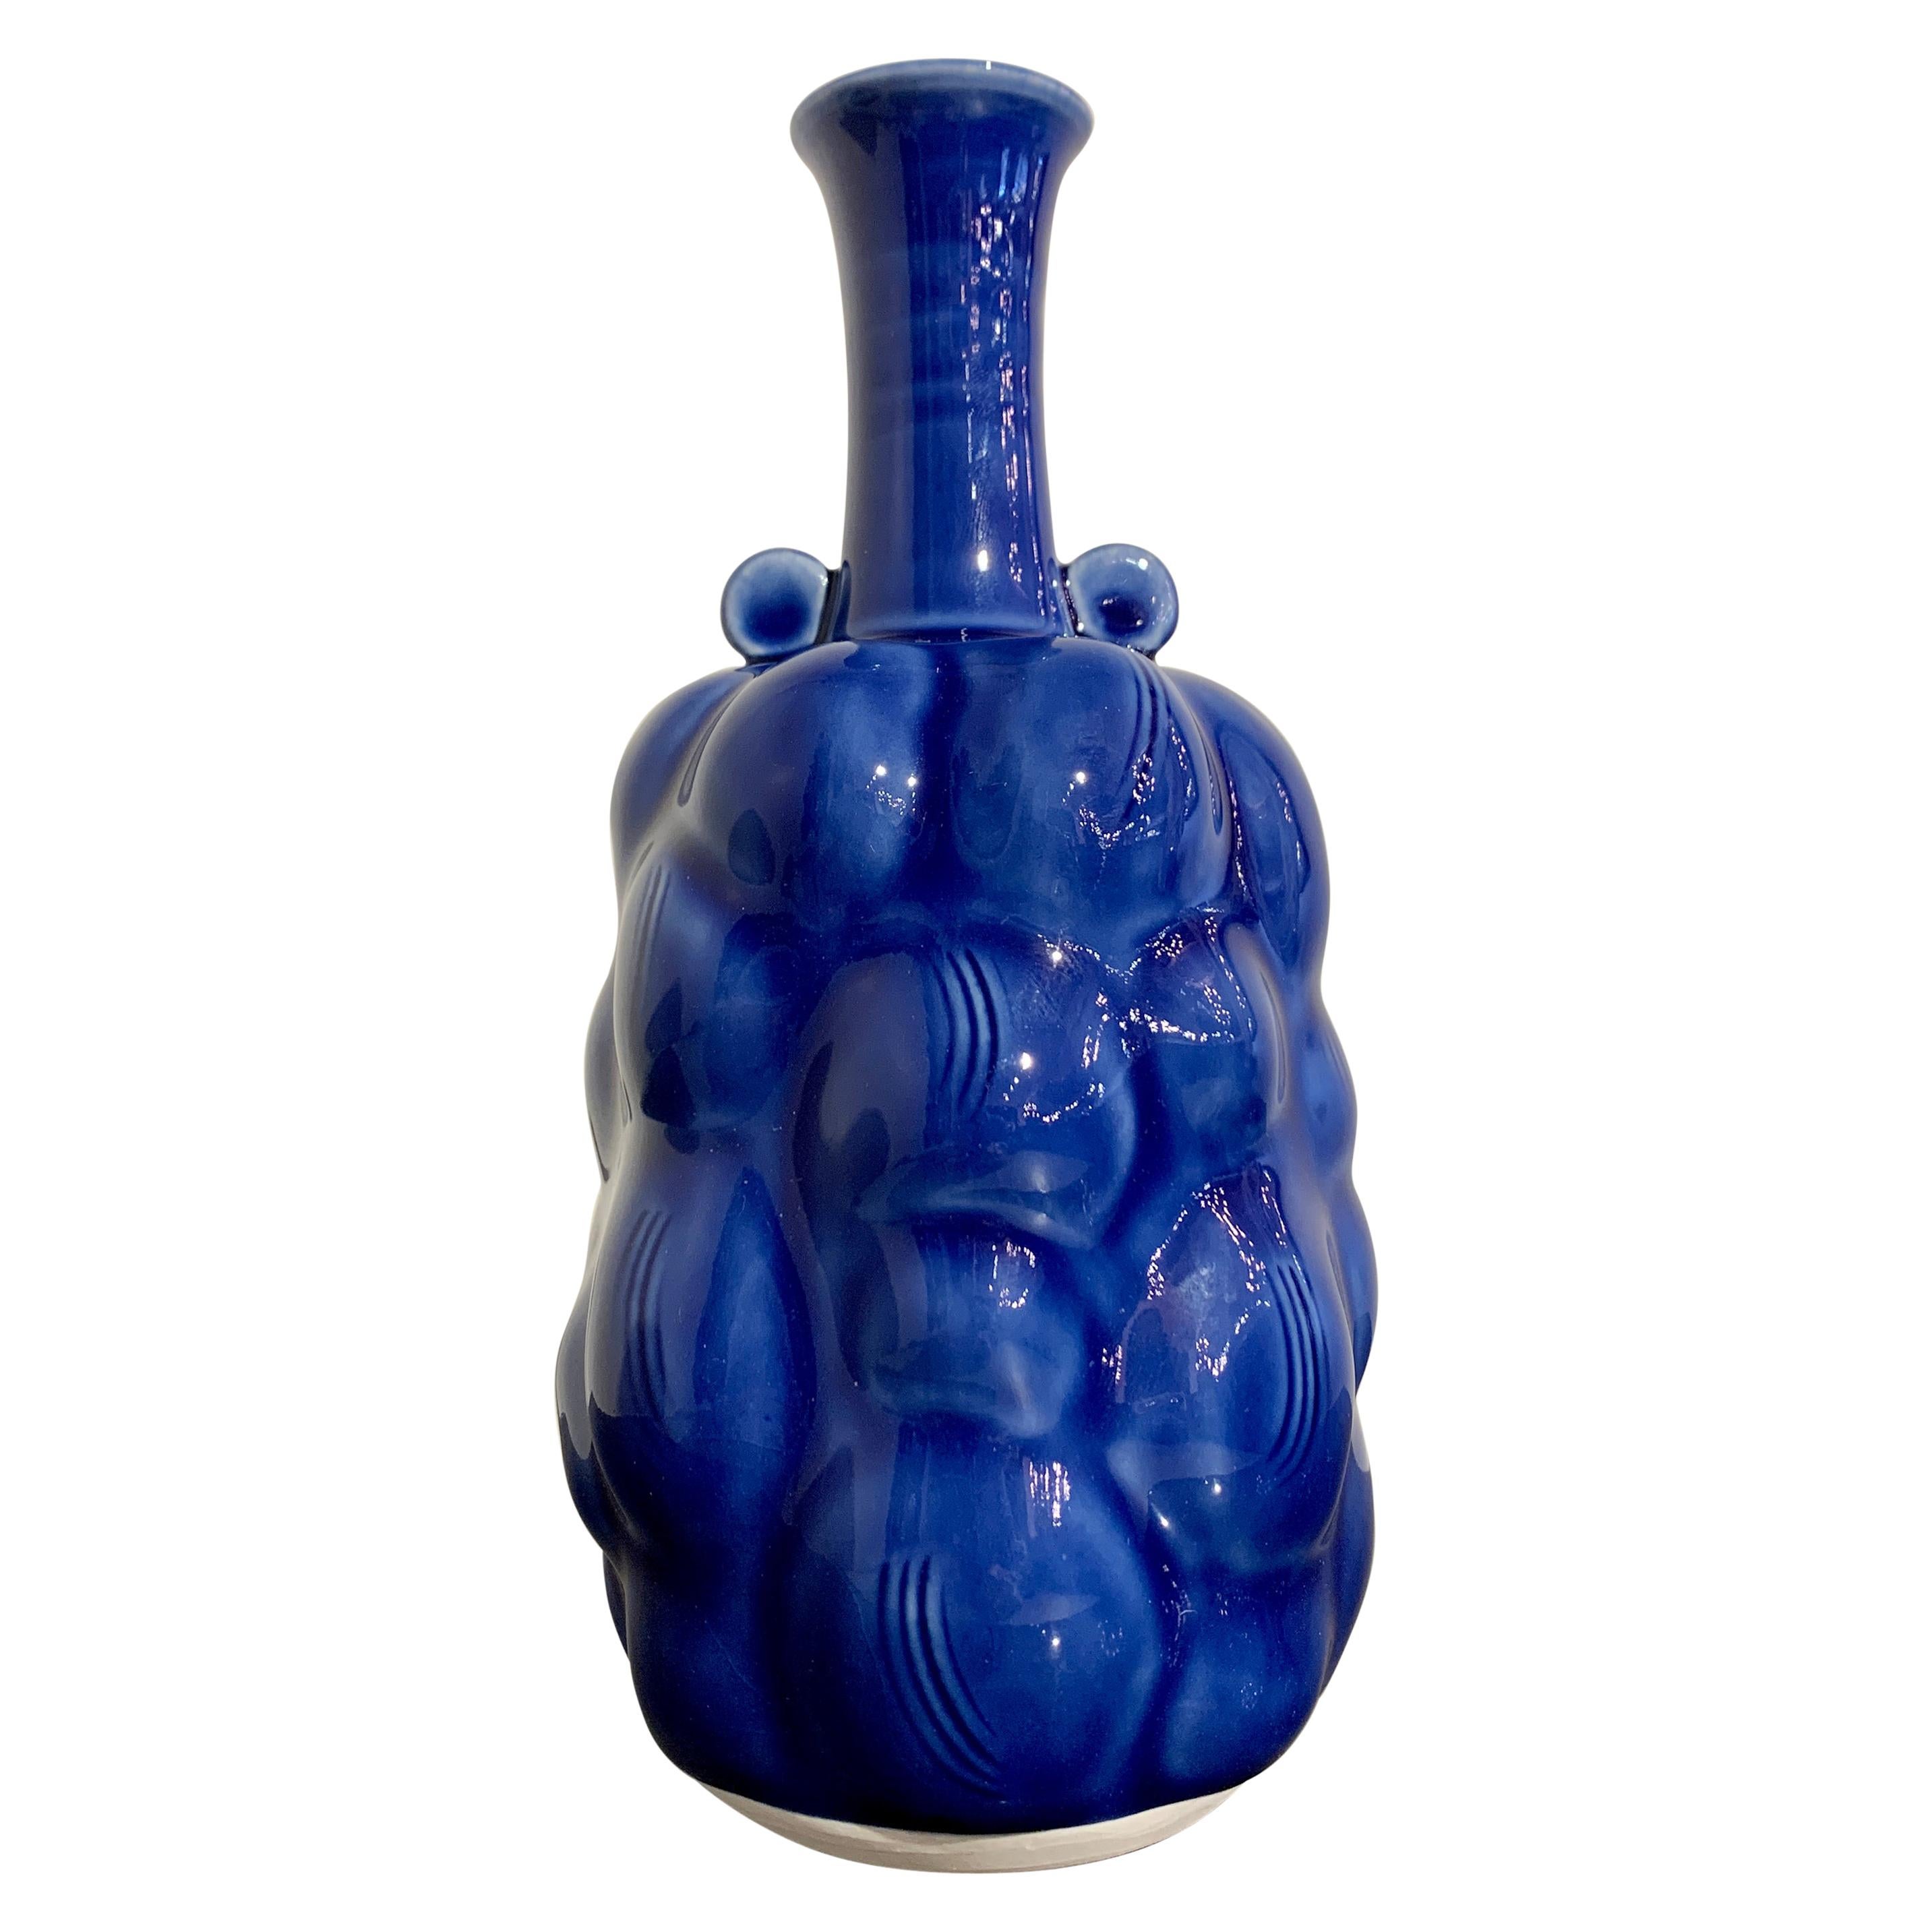 Japanese Kobeigama Cobalt Blue Glazed Vase Attributed to Kato Takuo, Late 20th c